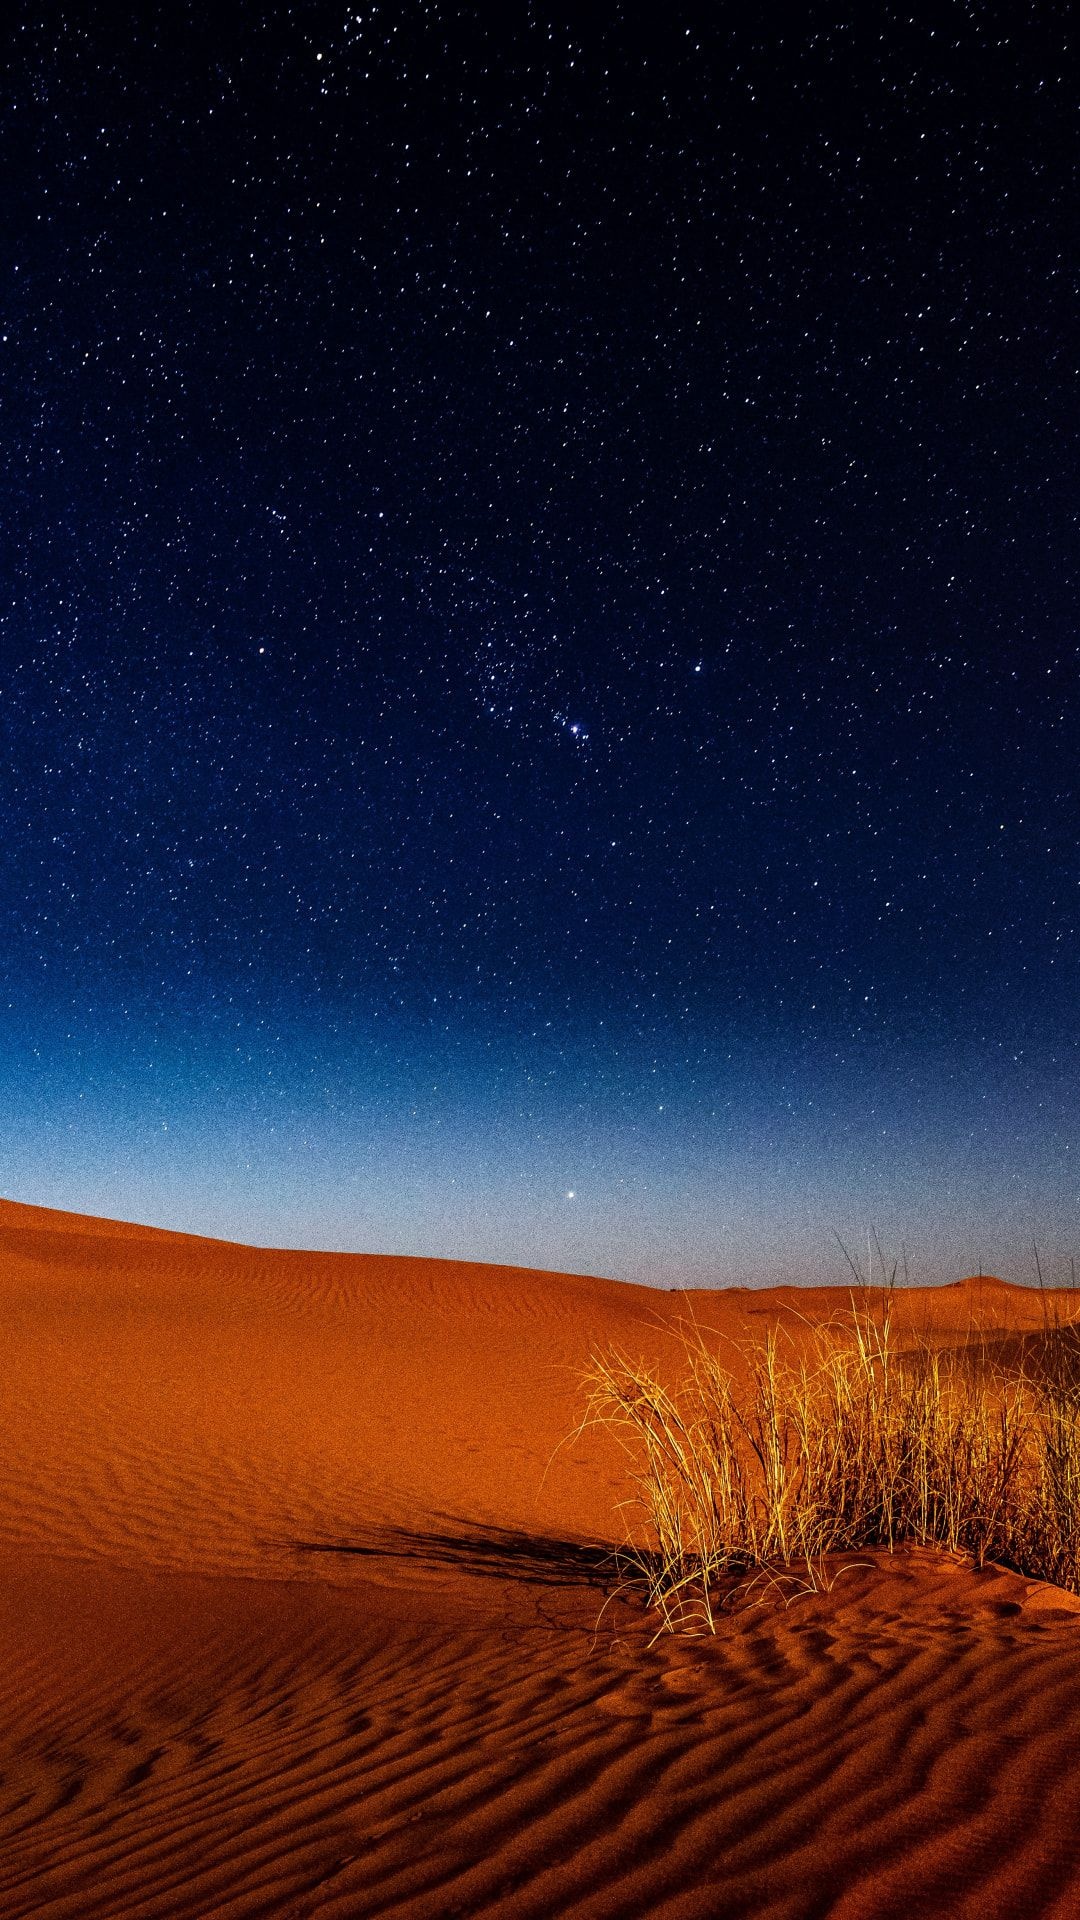 Gobi Desert, Desert at night, Nocturnal beauty, Starry skies, 1080x1920 Full HD Phone